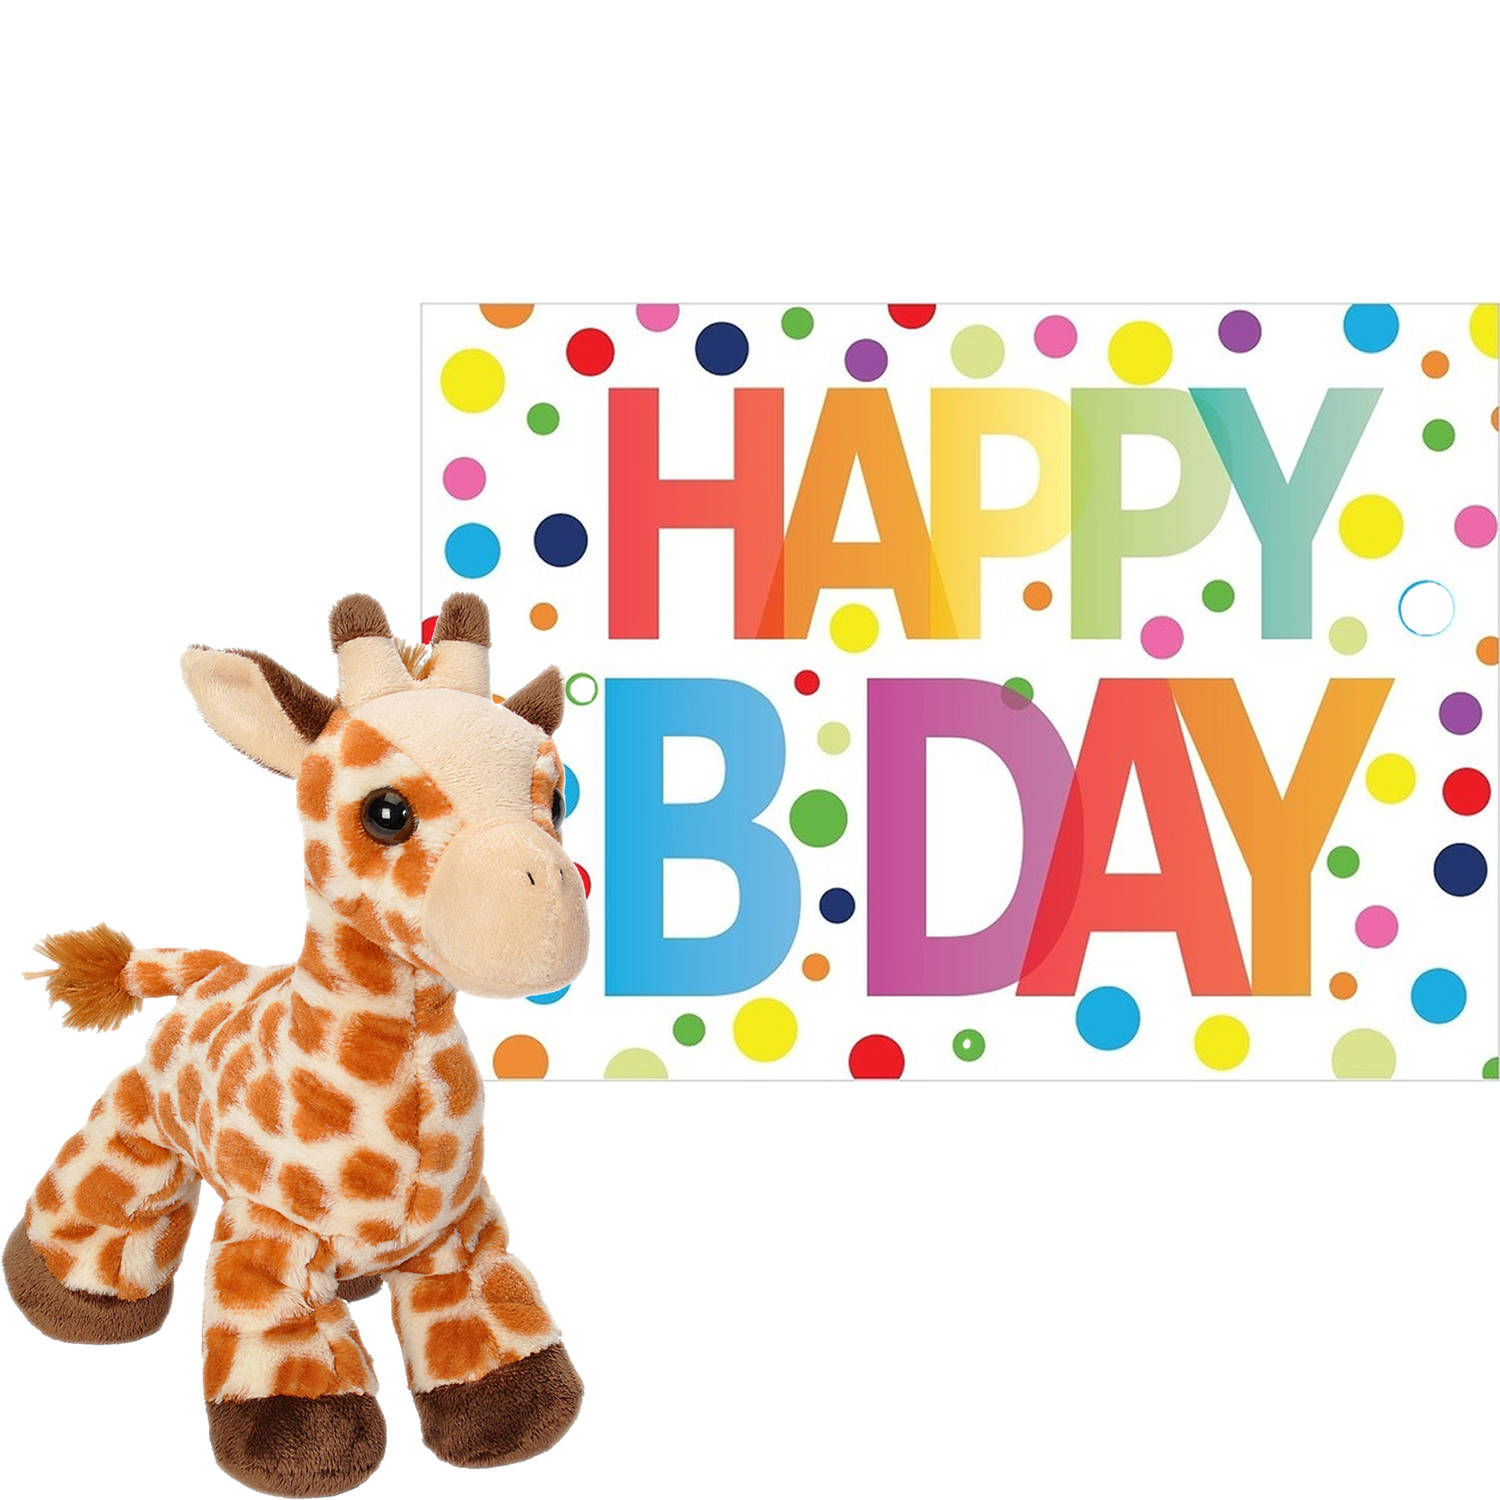 Wild Republic Pluche Dieren Knuffel Giraffe 18 Cm Met Happy Birthday Wenskaart - Knuffeldier